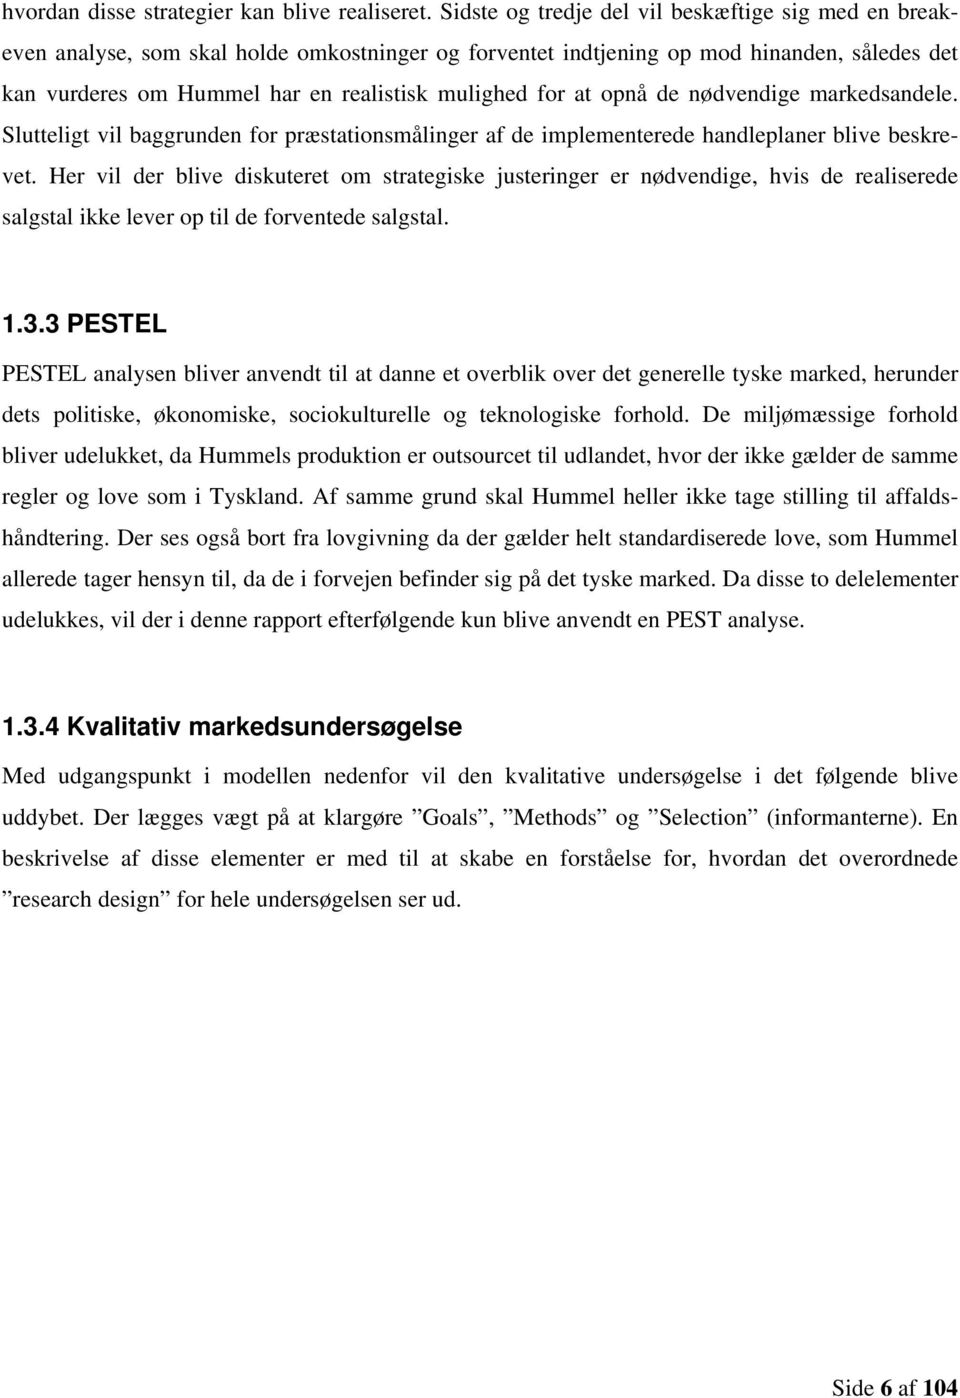 Fremskreden Taktil sans I de fleste tilfælde Hummels potentielle indtrængning på det tyske marked for  volleyballbeklædning og -sko - PDF Gratis download